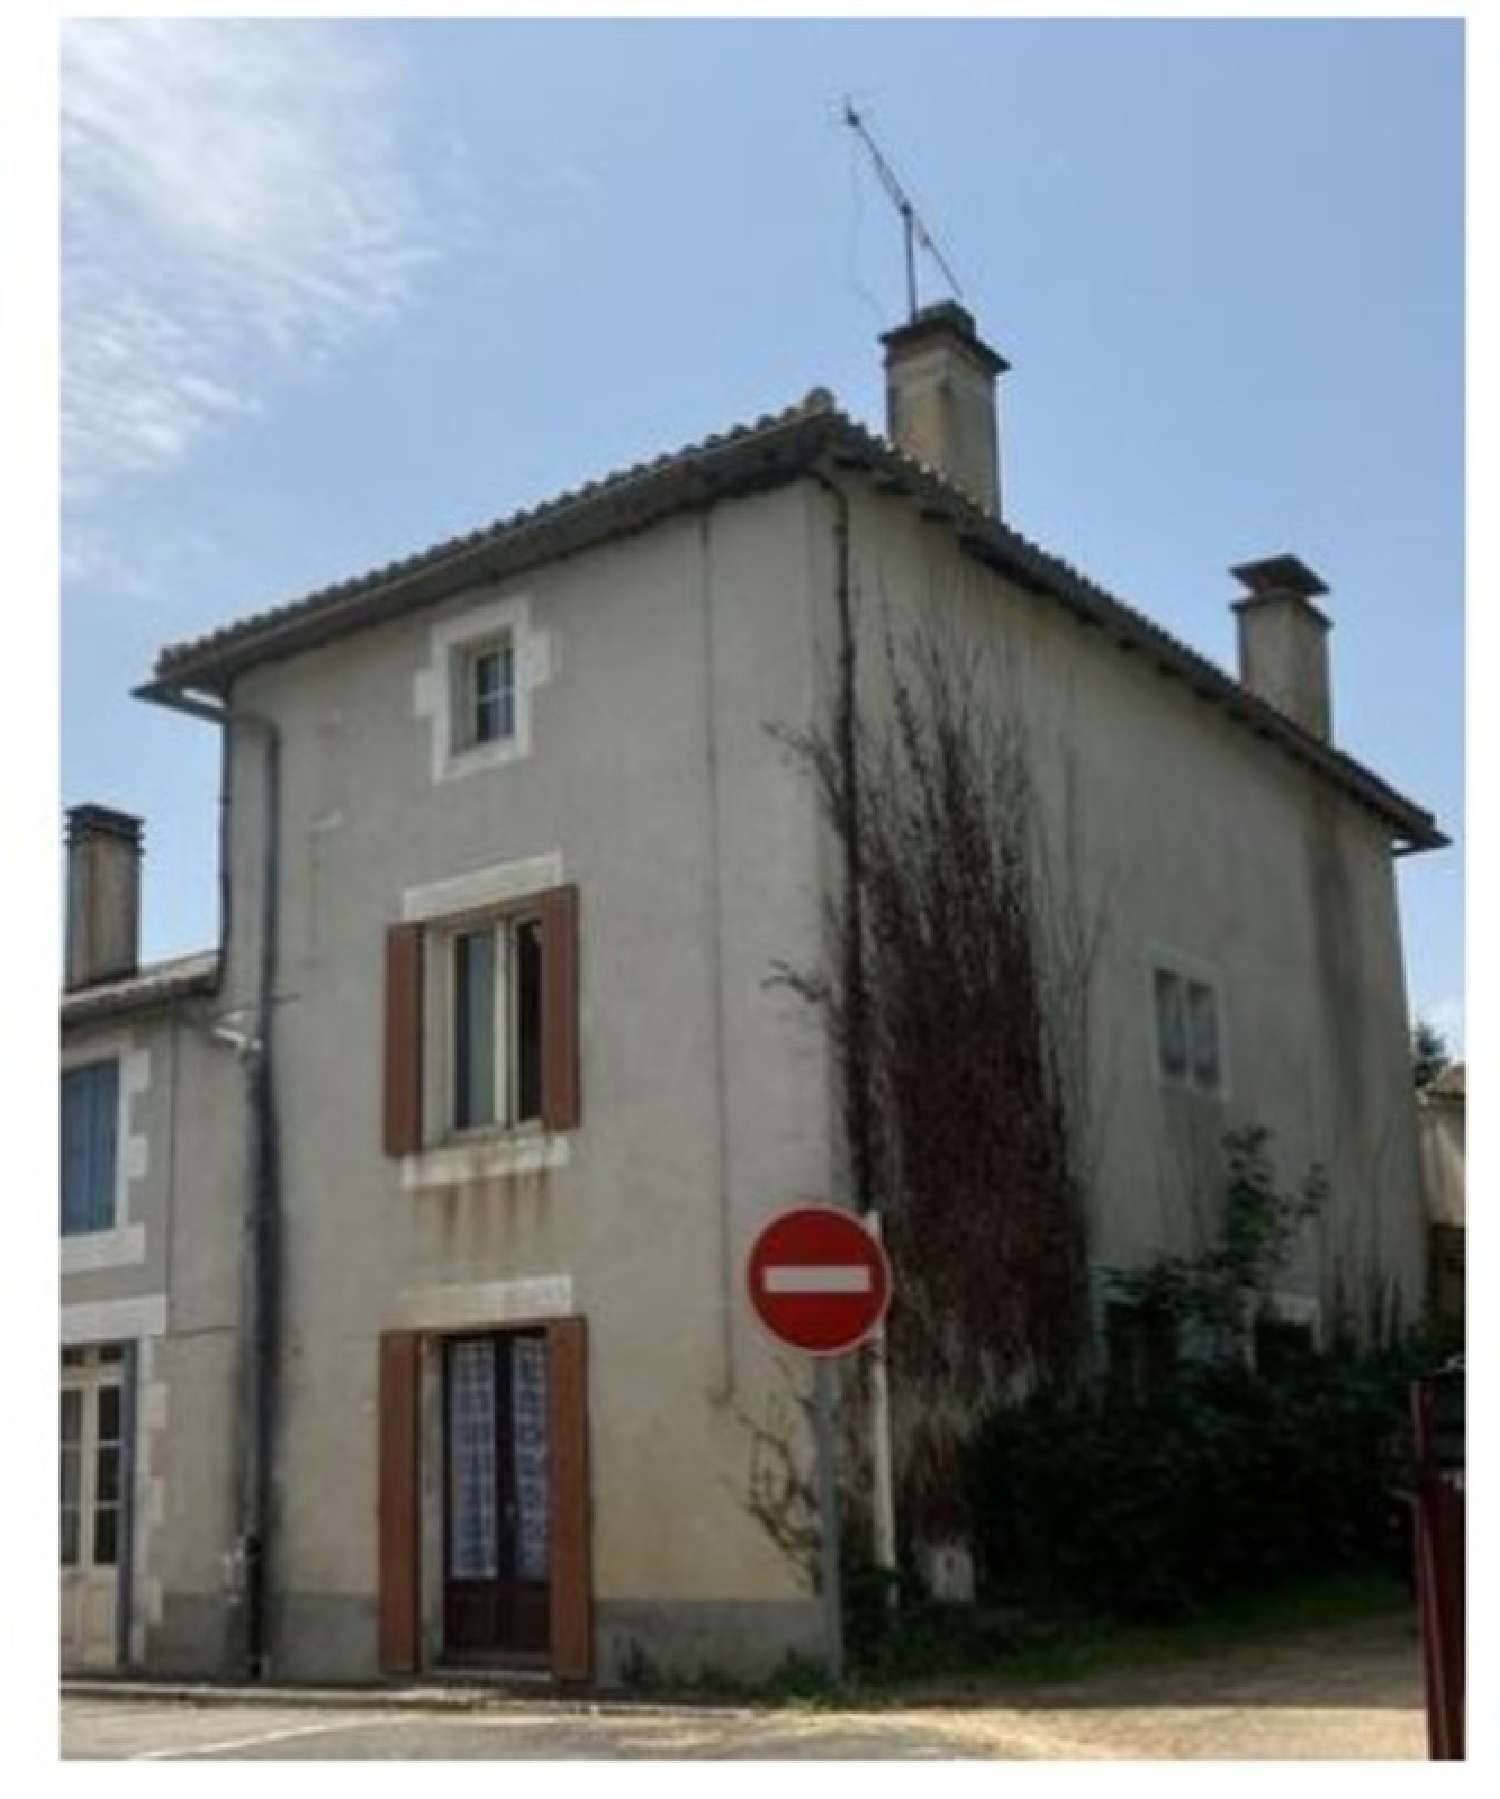  for sale village house Mauprévoir Vienne 1